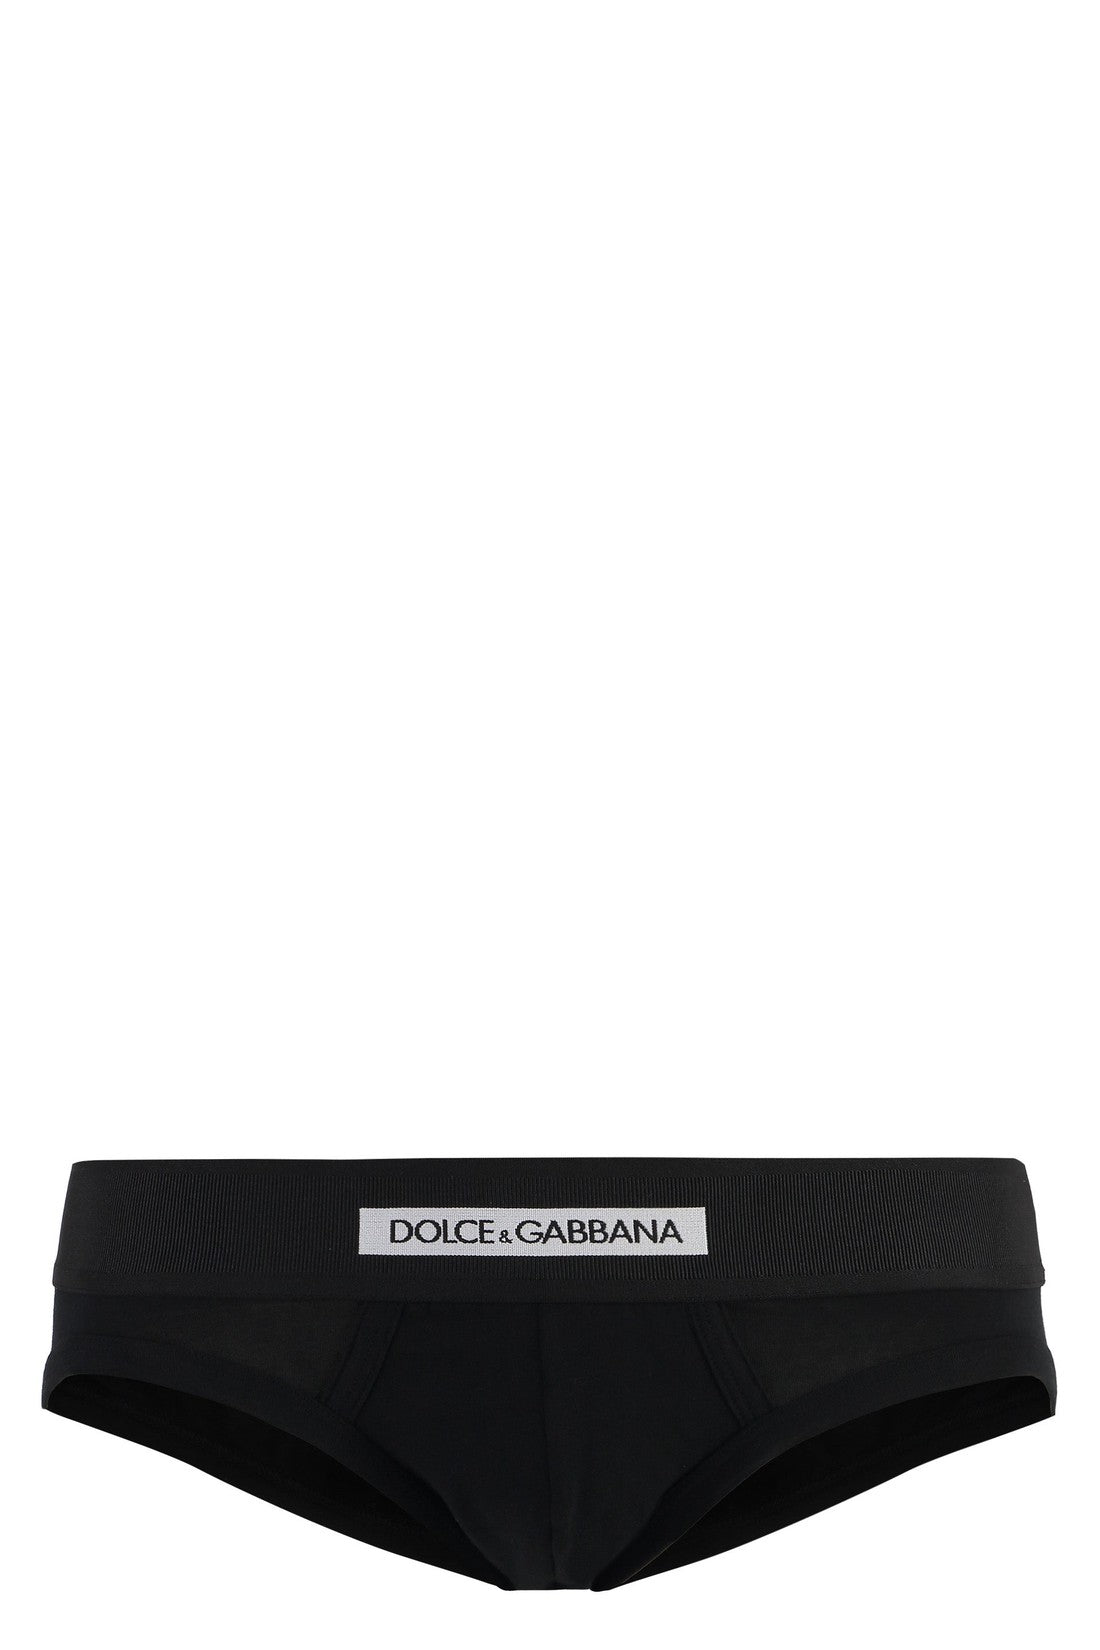 Dolce & Gabbana-OUTLET-SALE-Plain color briefs-ARCHIVIST